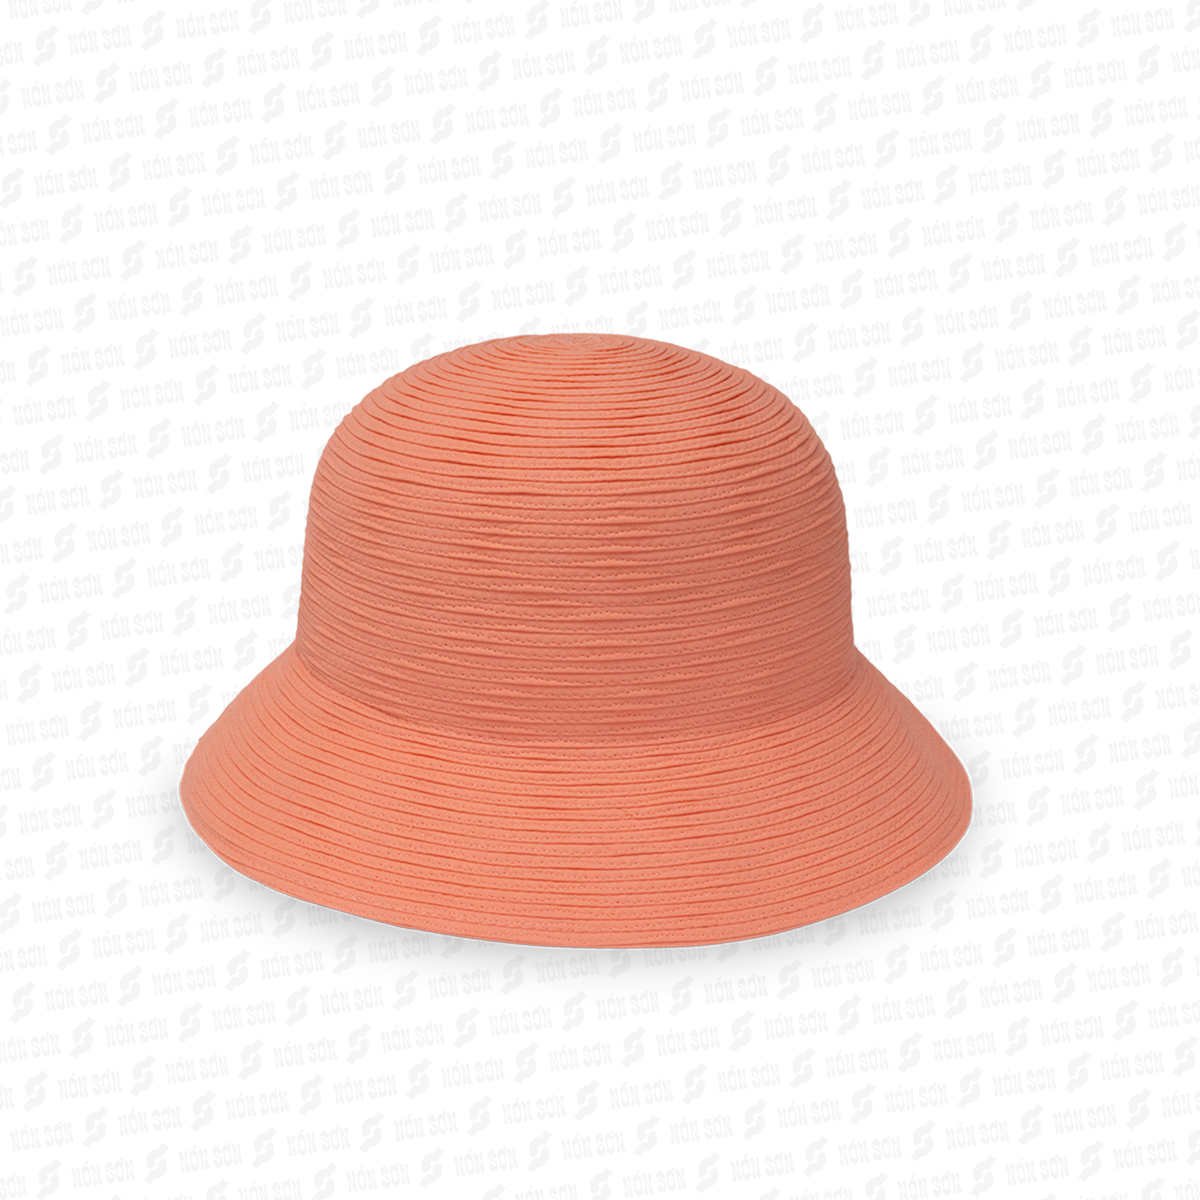 Mũ vành thời trang NÓN SƠN chính hãng XH001-97-HG2